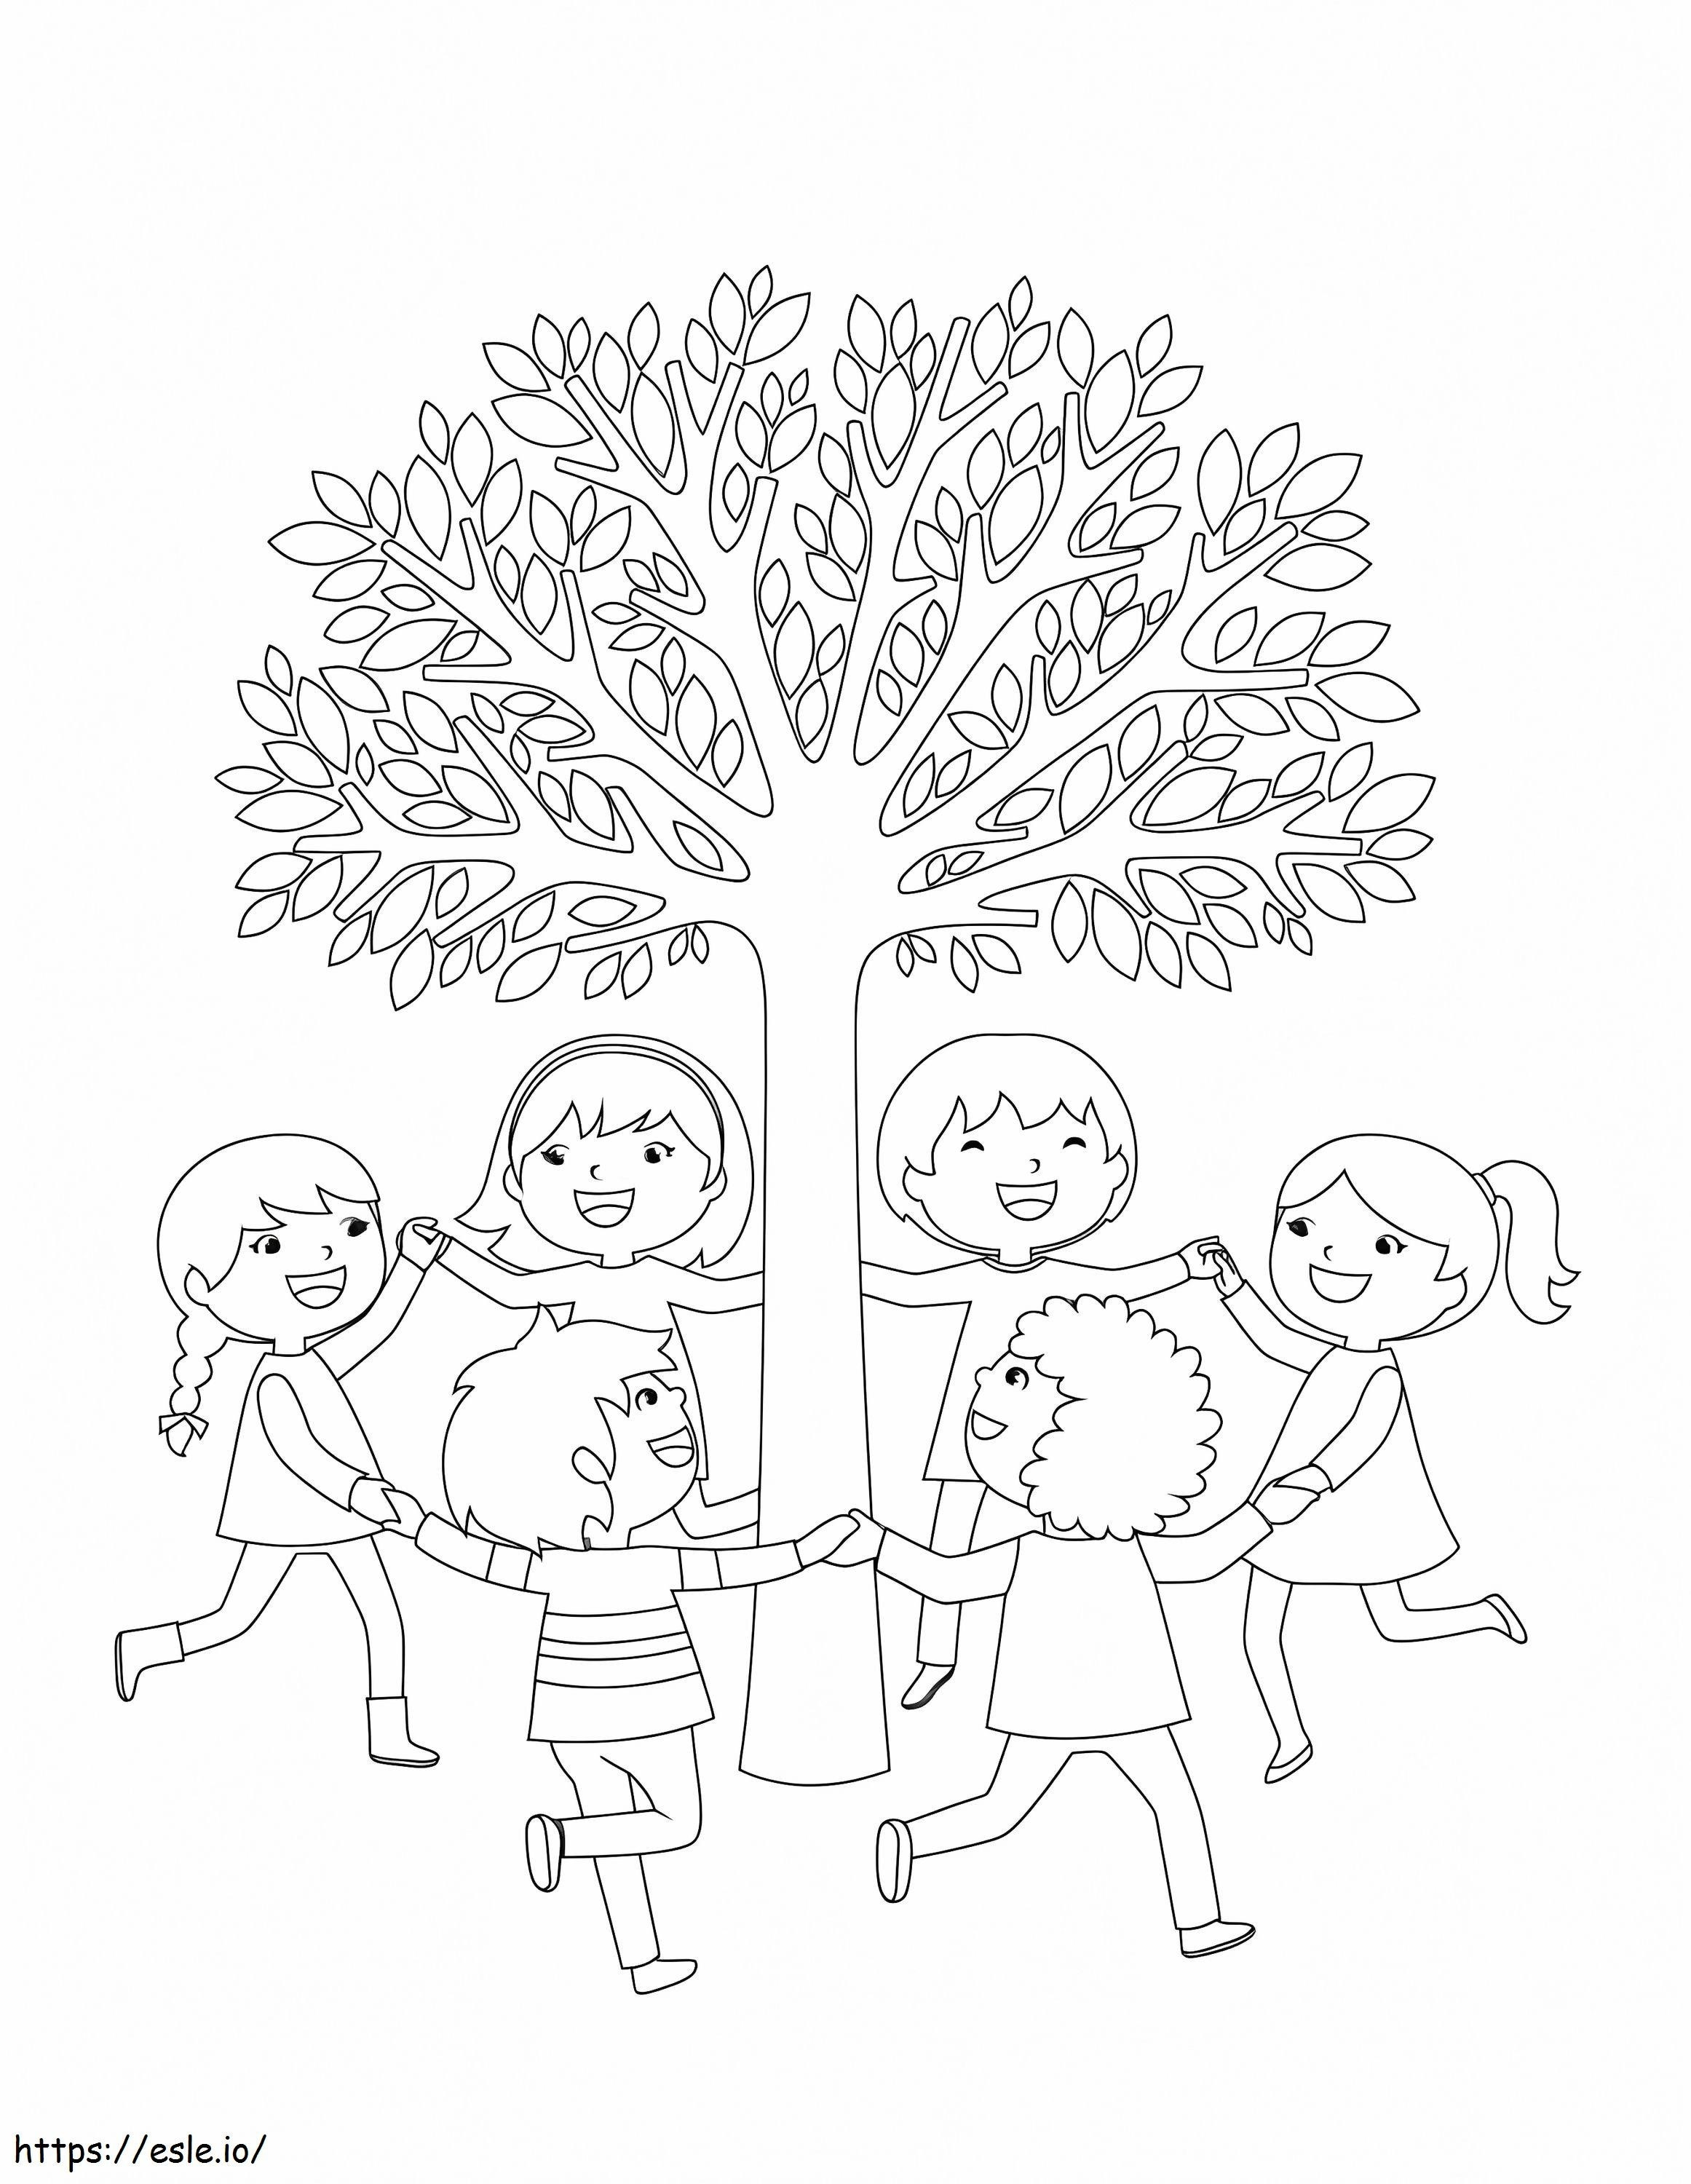 Sechs Freunde spielen mit dem Baum ausmalbilder